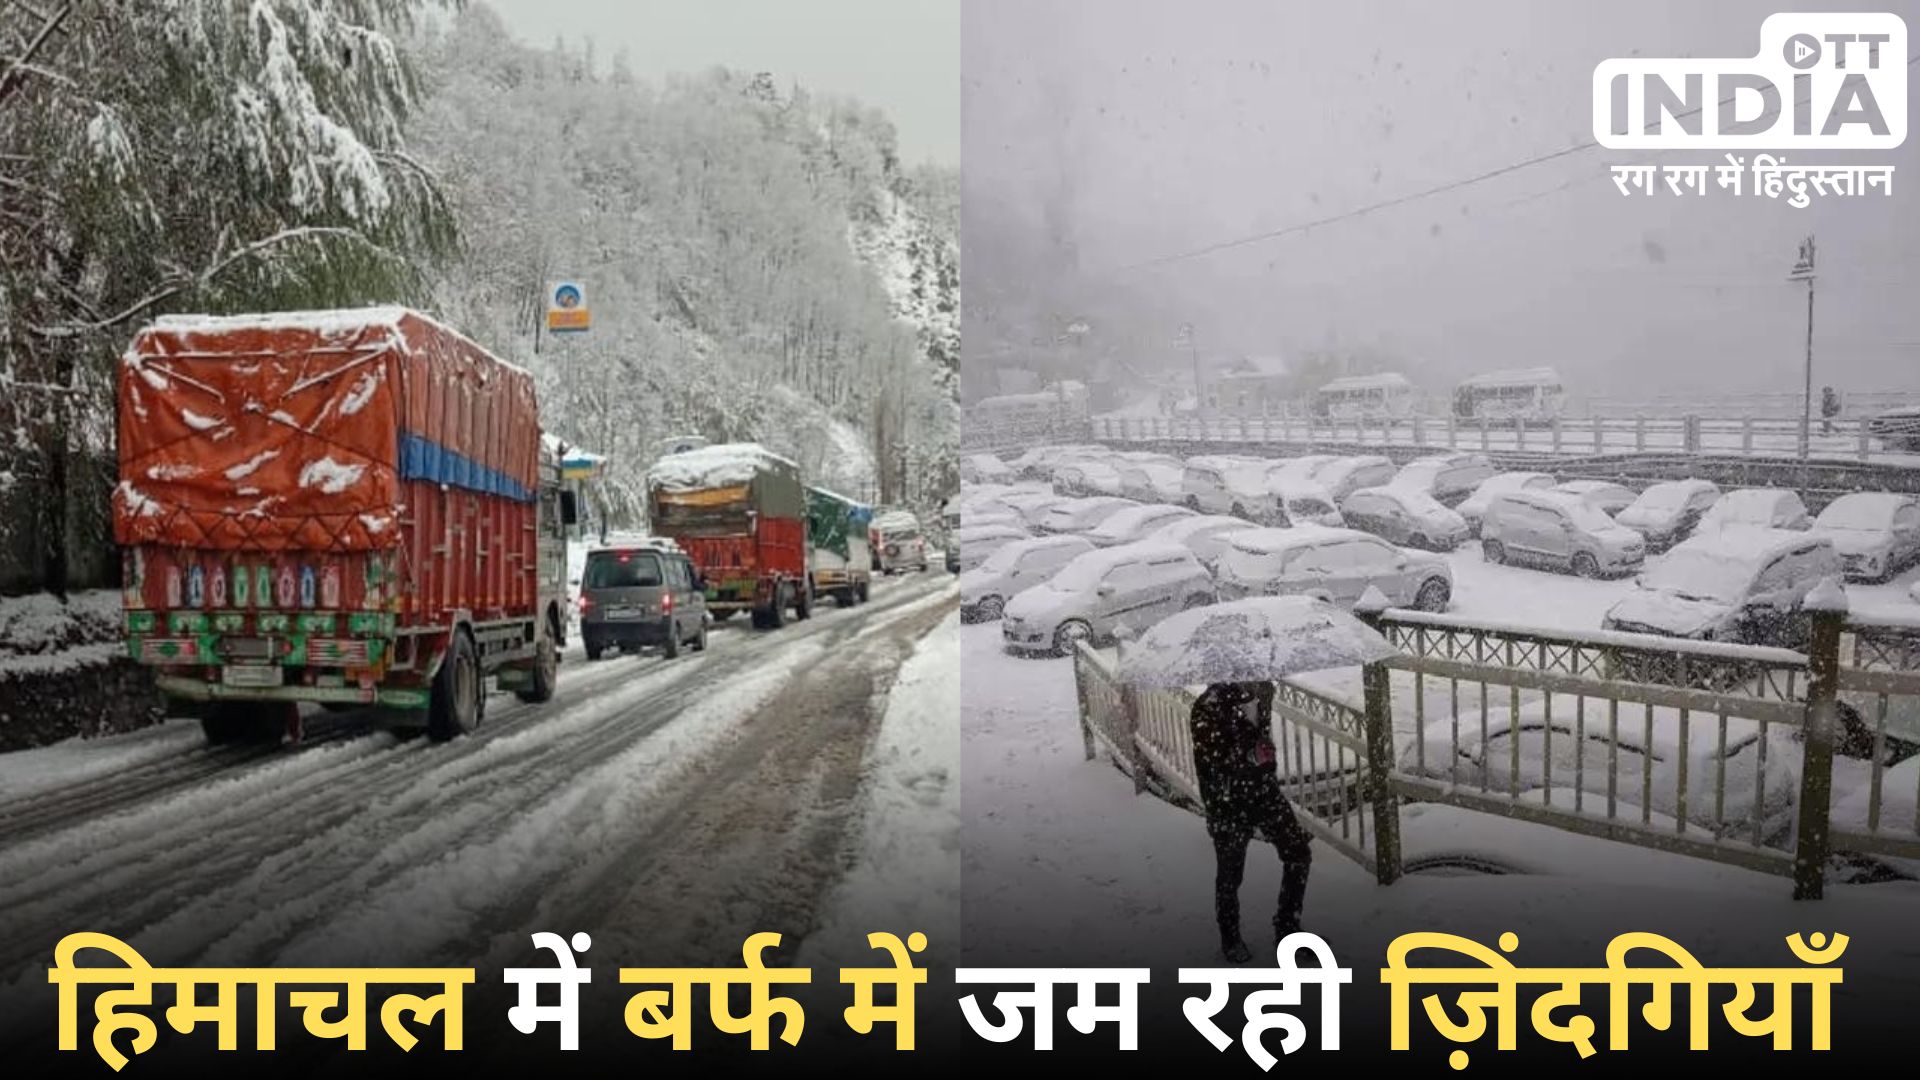 HIMACHAL PRADESH SNOWFALL: हिमाचल प्रदेश में बर्फबारी के साथ भारी बारिश, 405 सड़कें अवरुद्ध, बिजली – सड़कें बंद